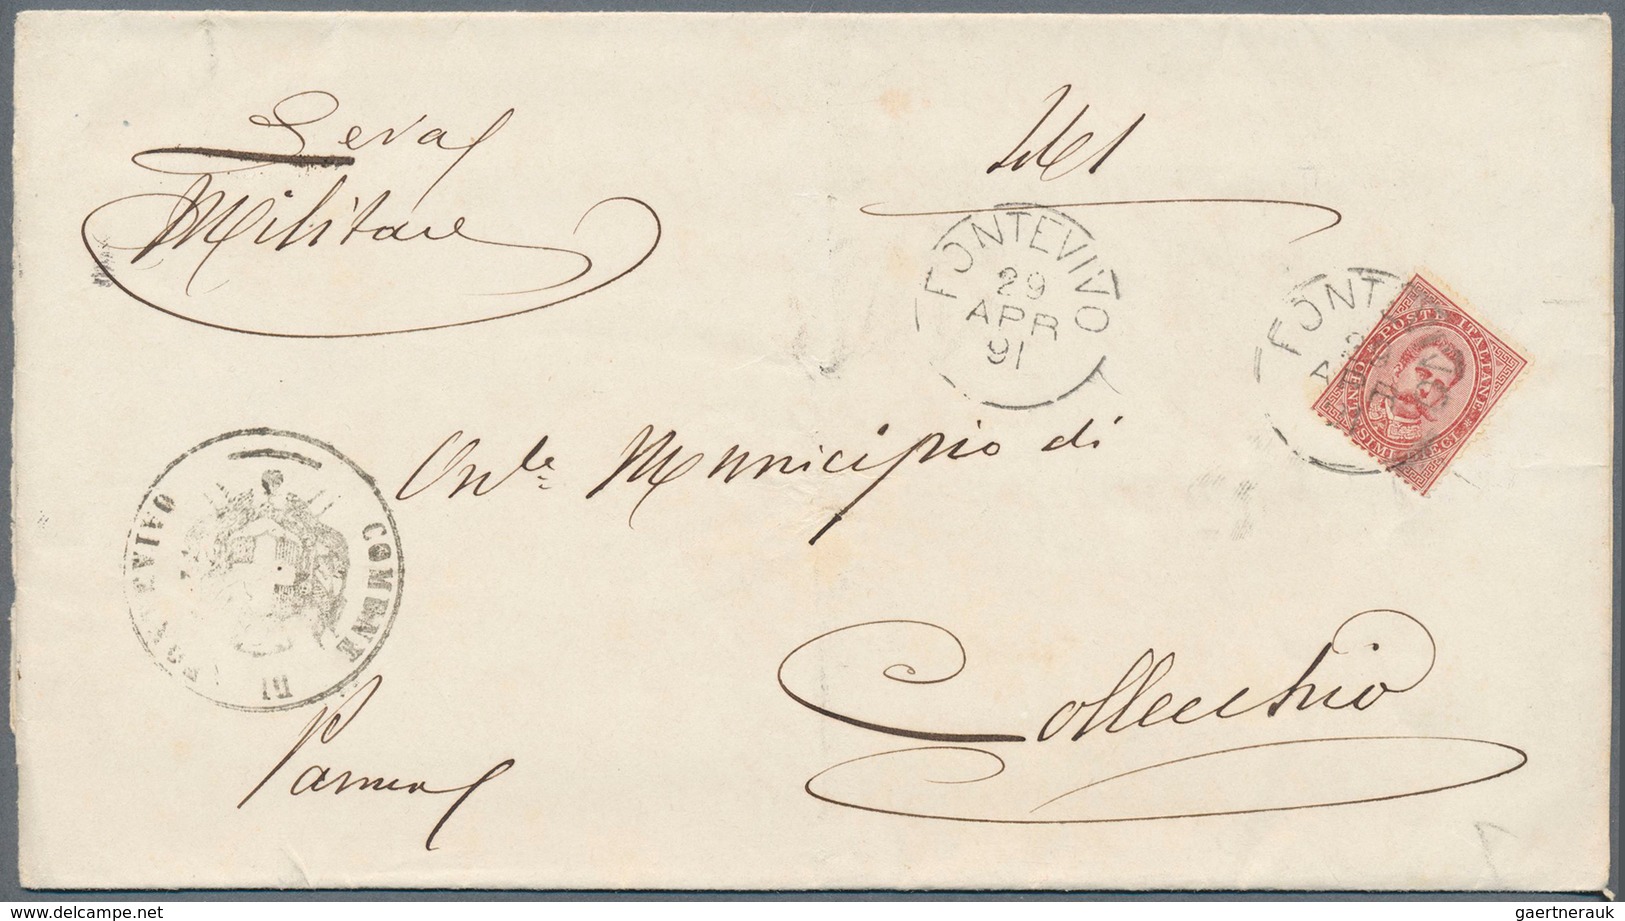 26957 Italien: 1880/1895 (ca.), 7 Gemeindebriefe mit verschiedenen Frankaturen, Stempeln und Adressaten, a